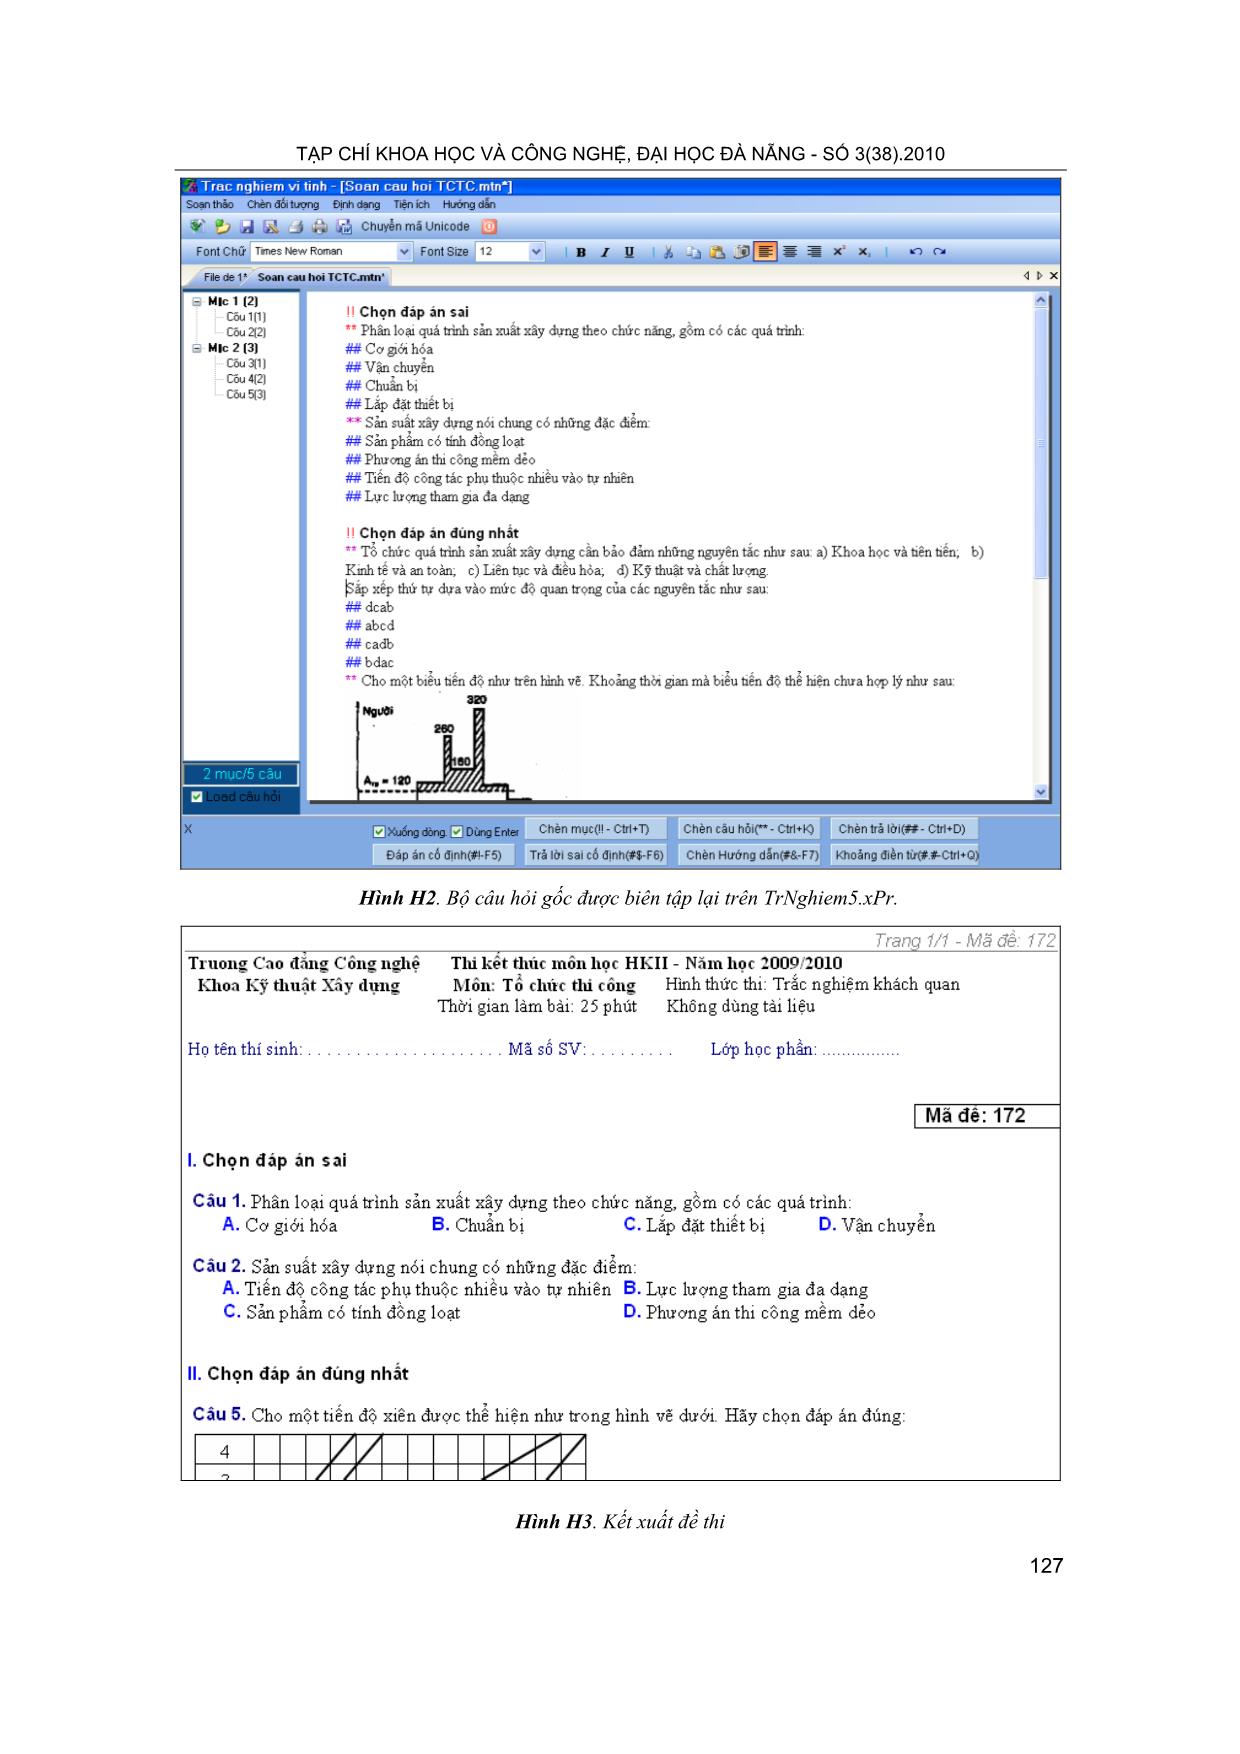 Lập bộ đề thi trắc nghiệm khách quan bằng phần mềm Trnghiem5.XPR để kiểm tra, đánh giá kết quả học tập học phần tổ chức thi công trang 5